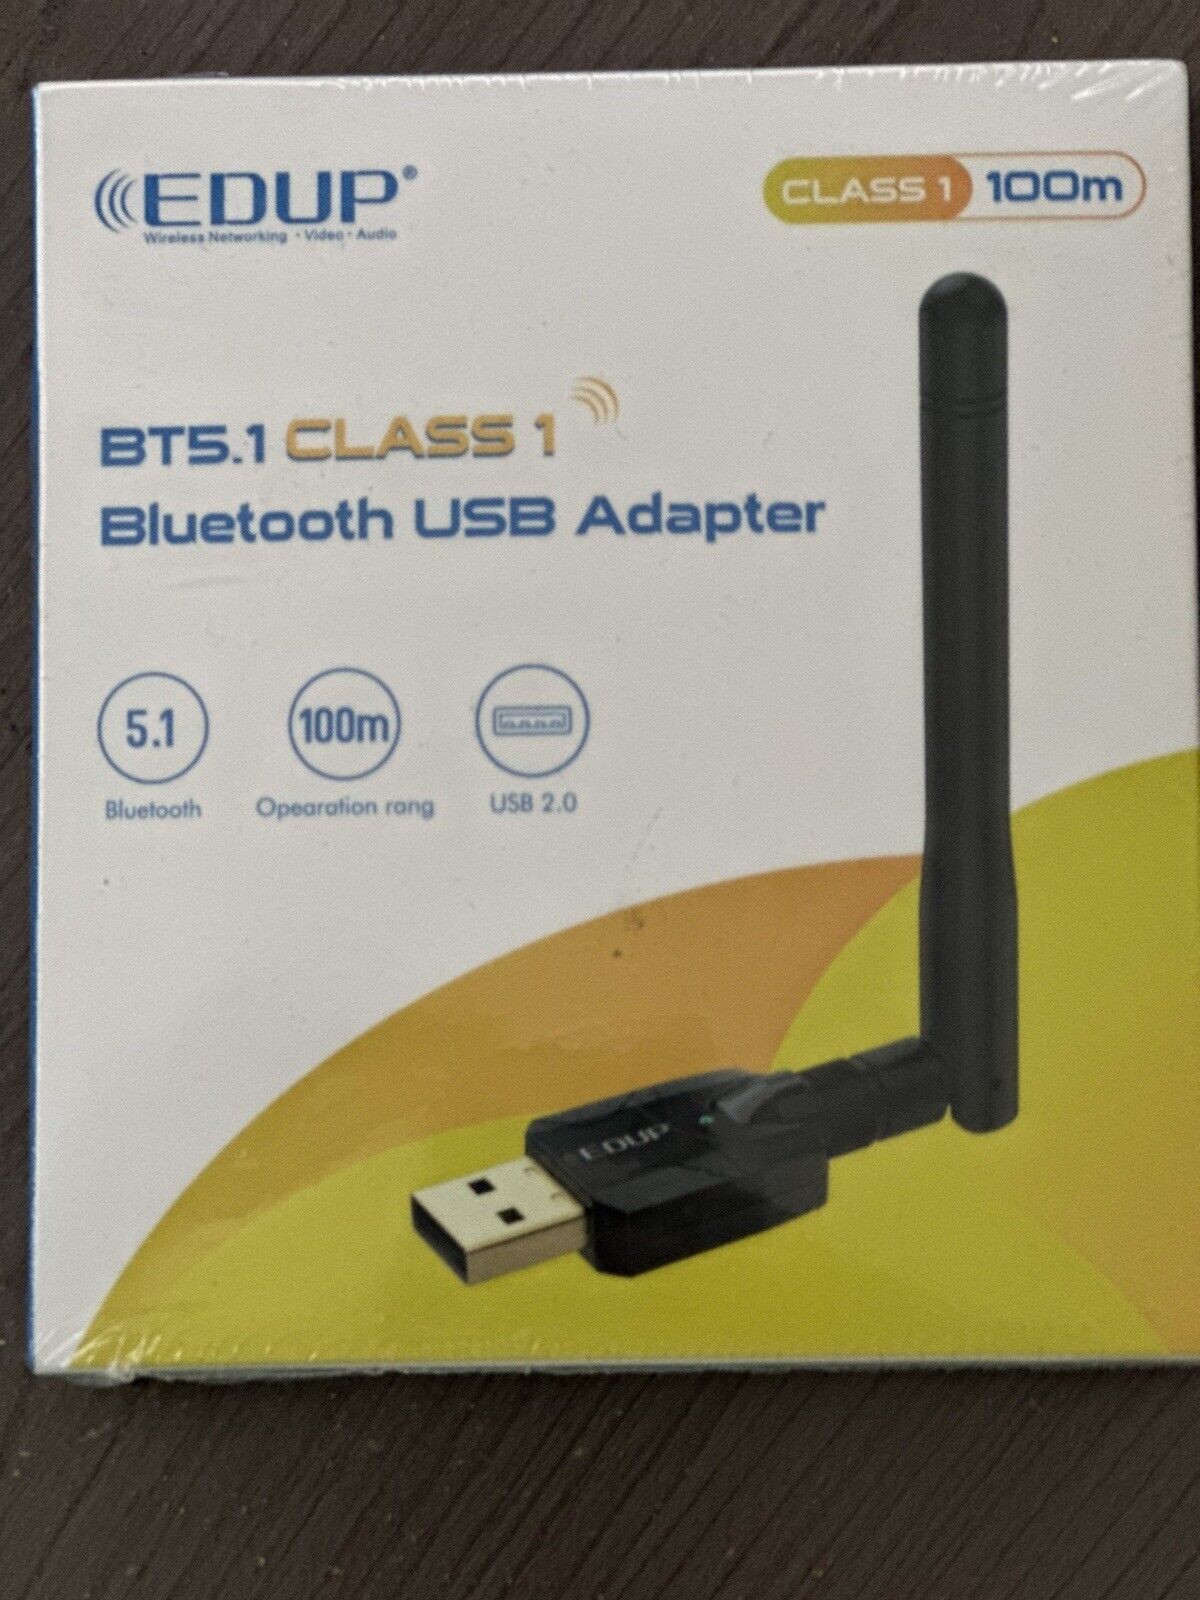 BT5.1 Class 1 Bluetooth USB Adapter